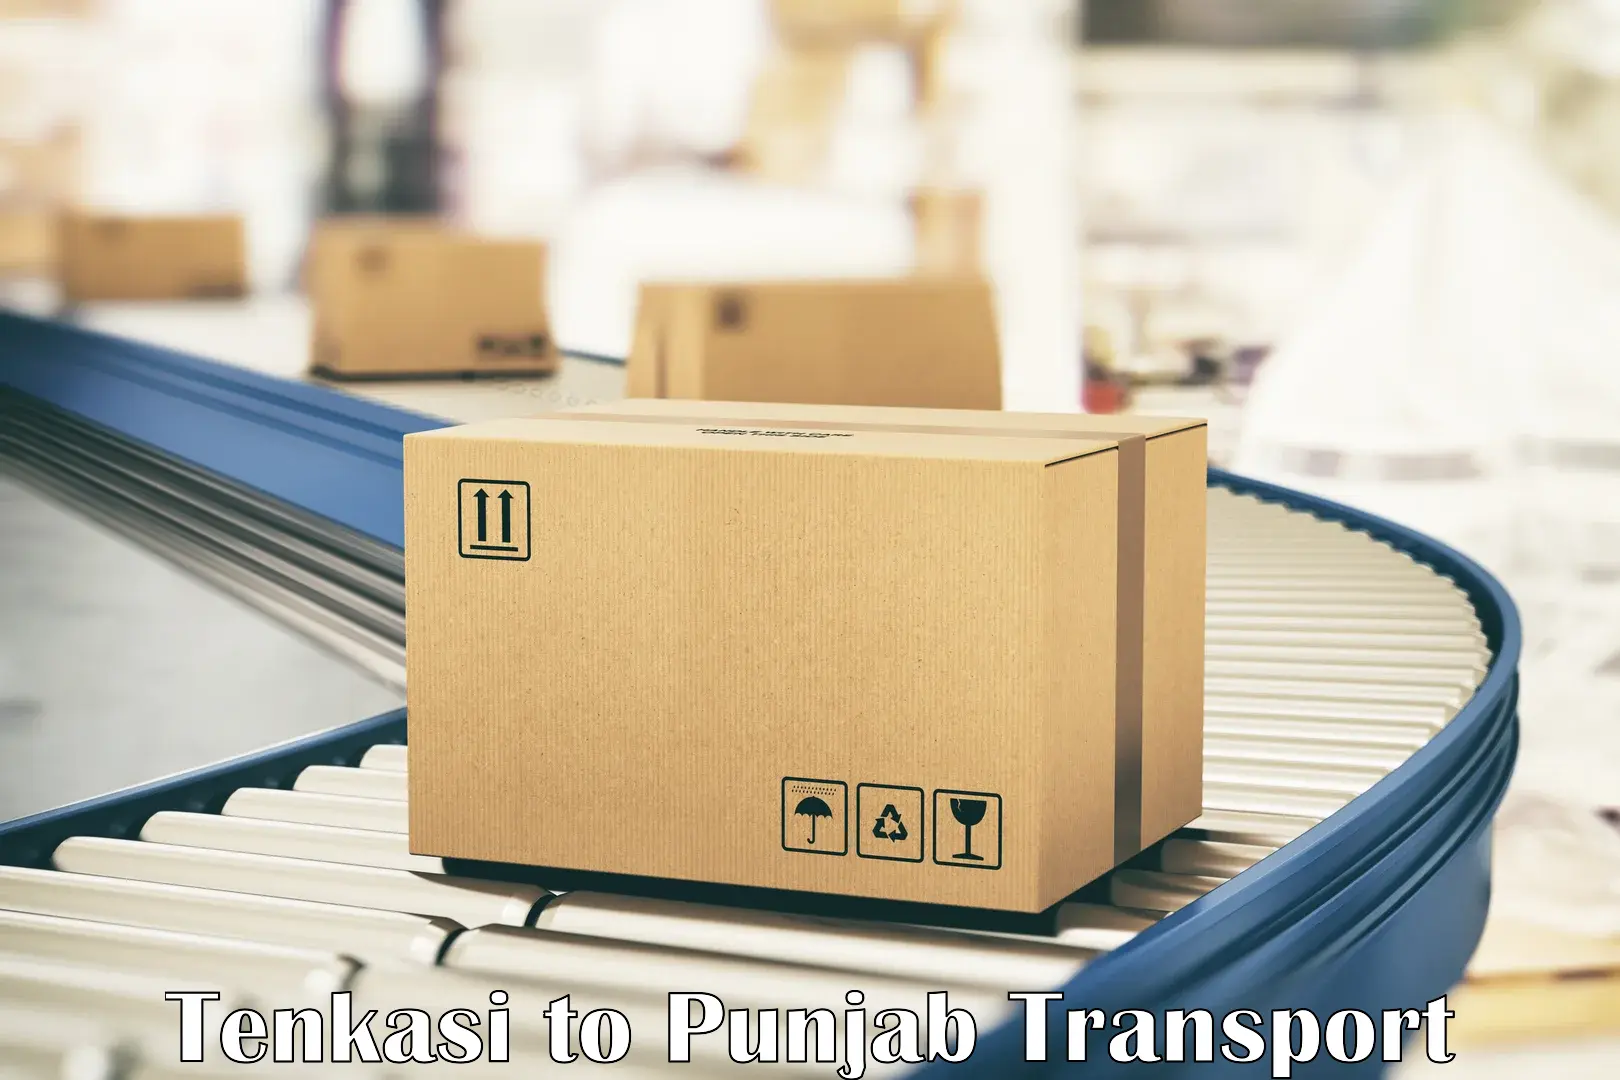 Furniture transport service Tenkasi to Pathankot